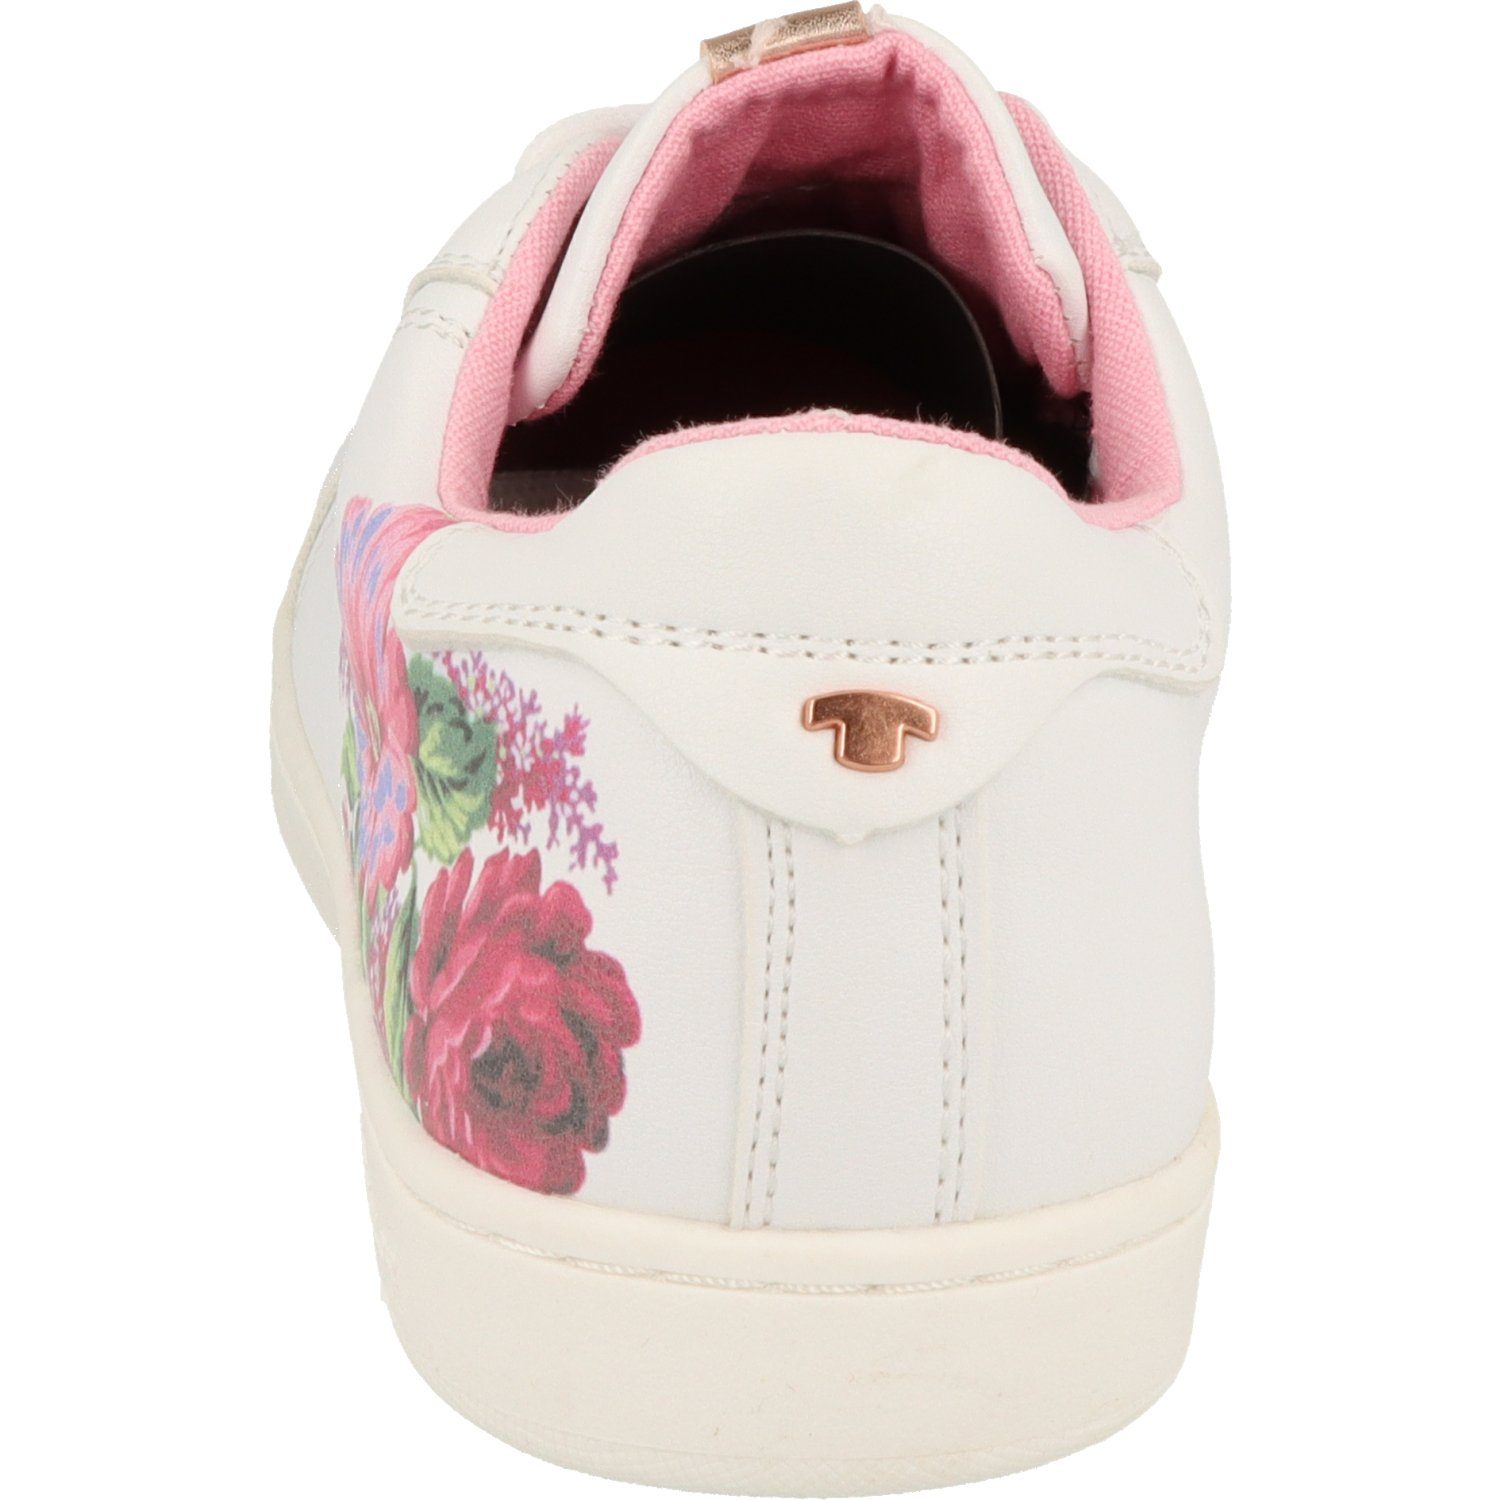 TOM TAILOR Mädchen Schuhe White Flower Schnürschuh Sneaker 5372704 Halbschuhe